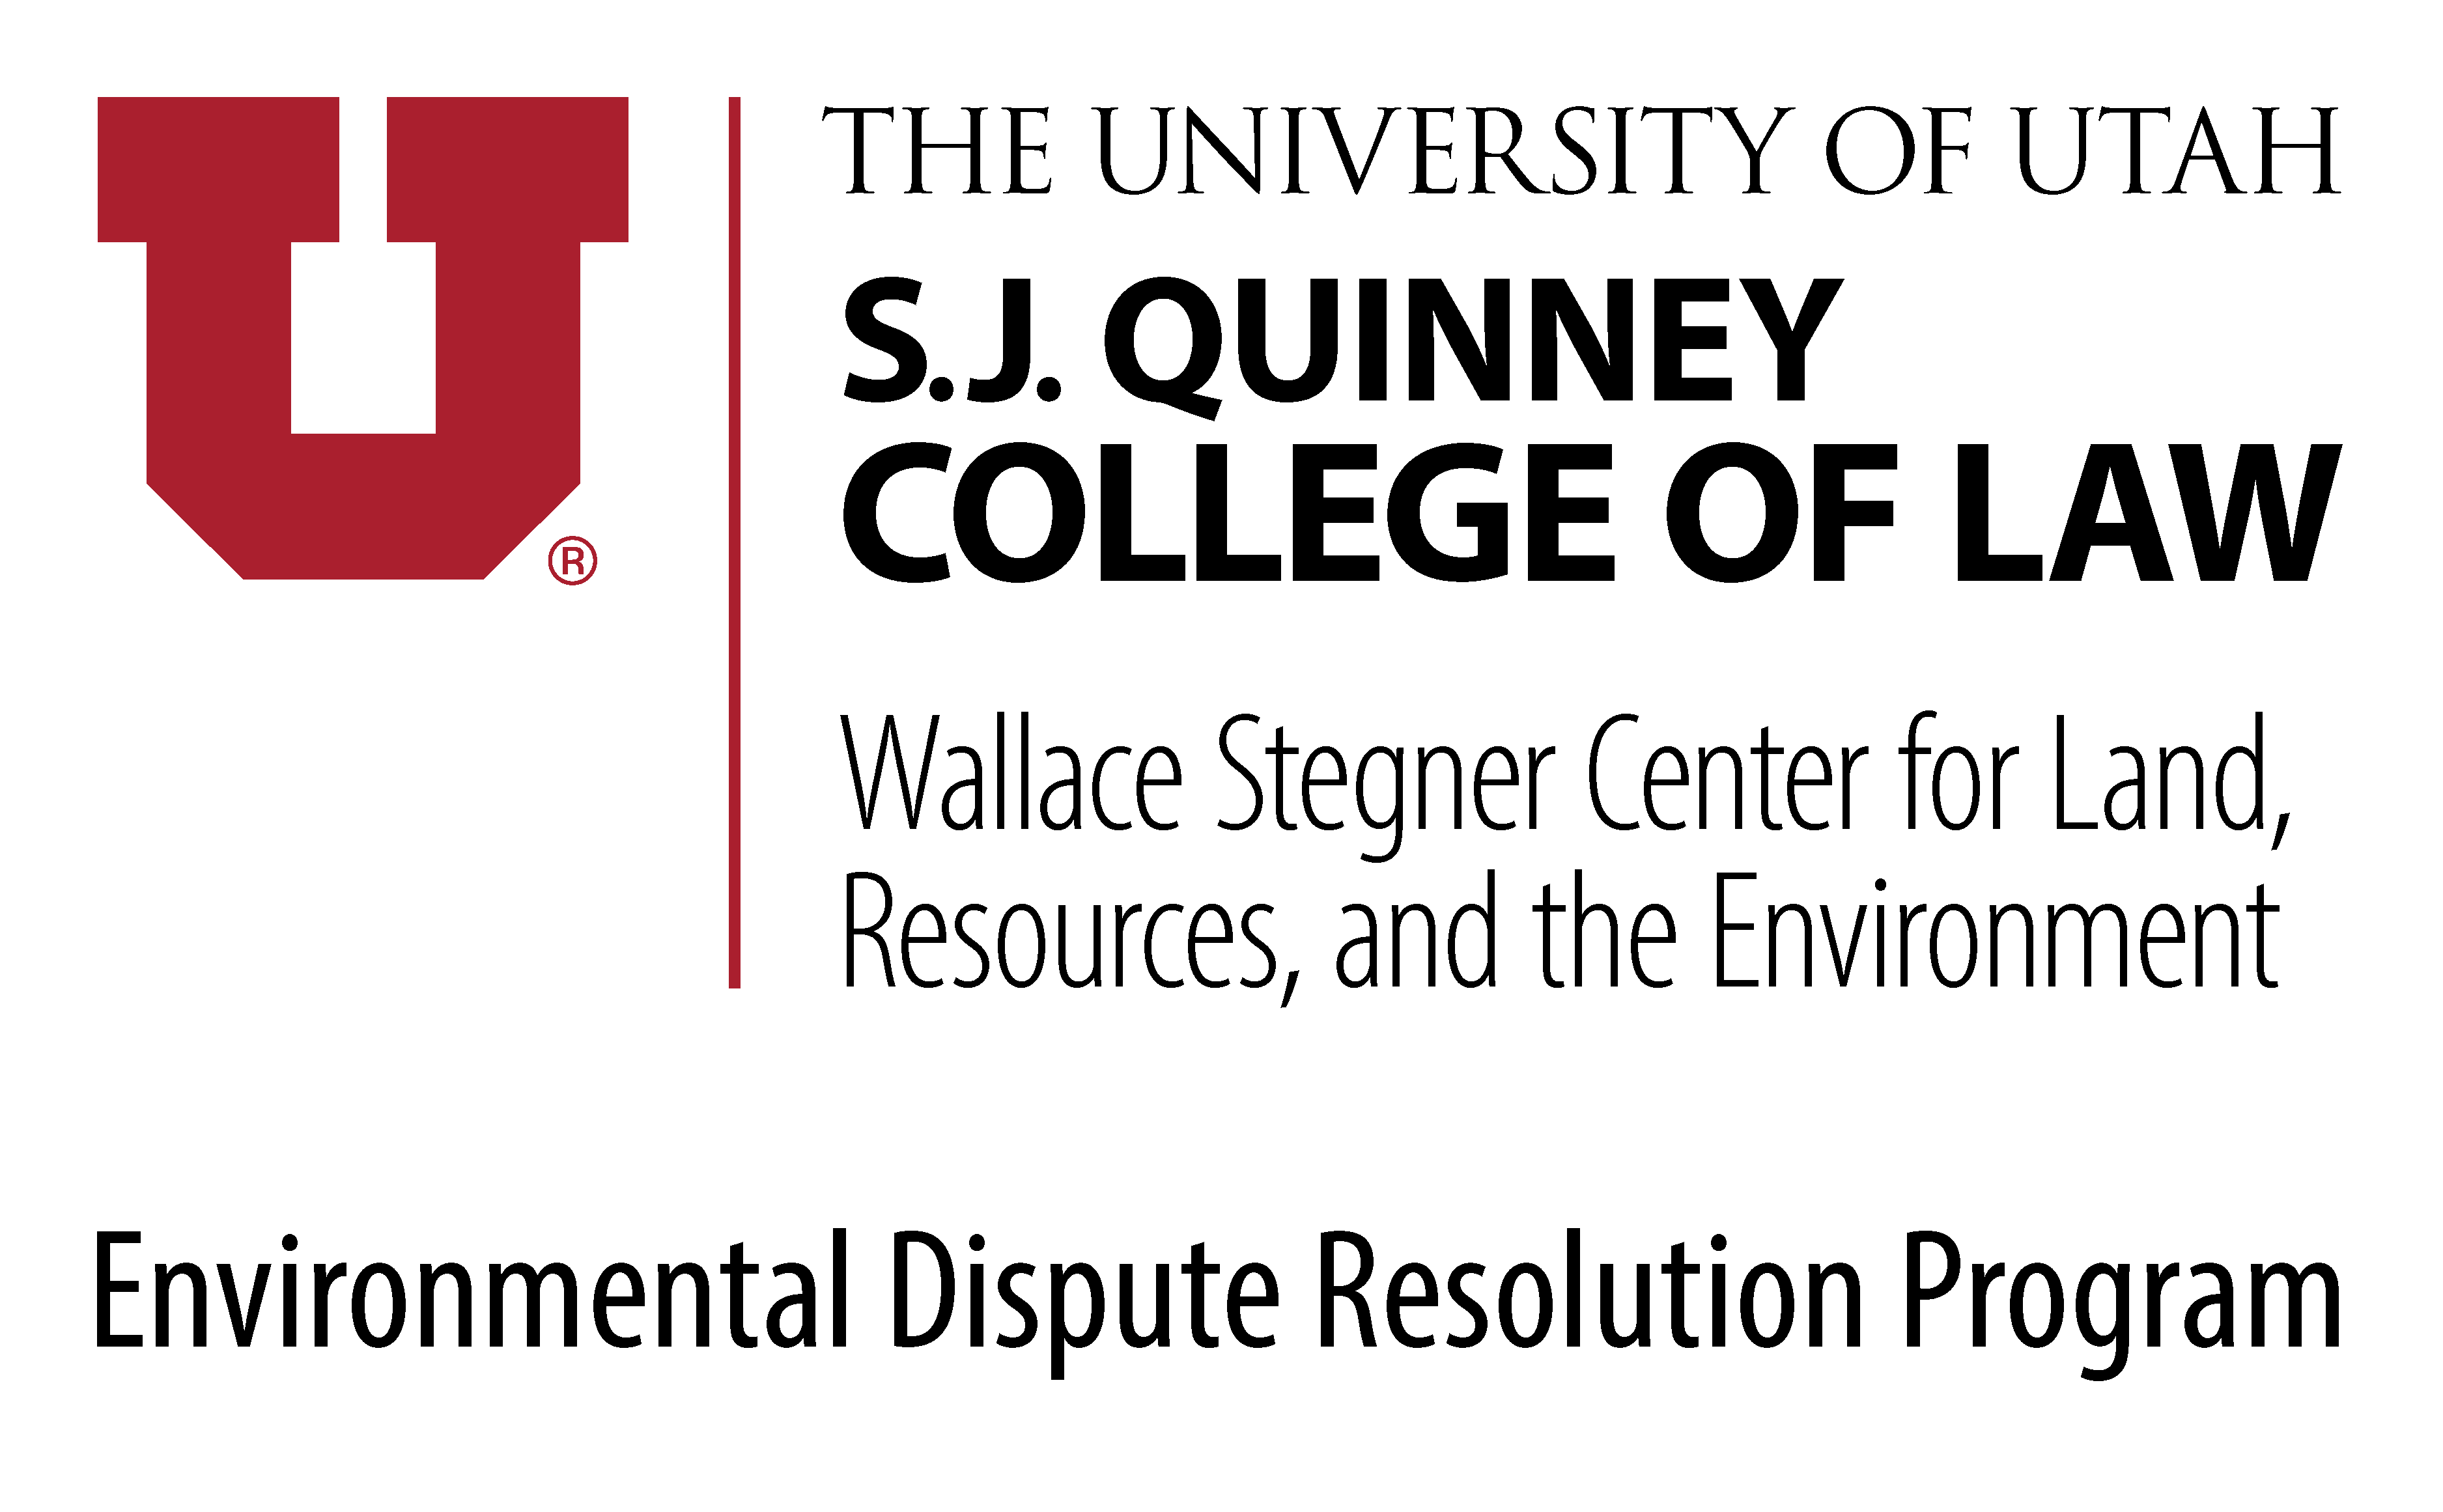 EDR Logo